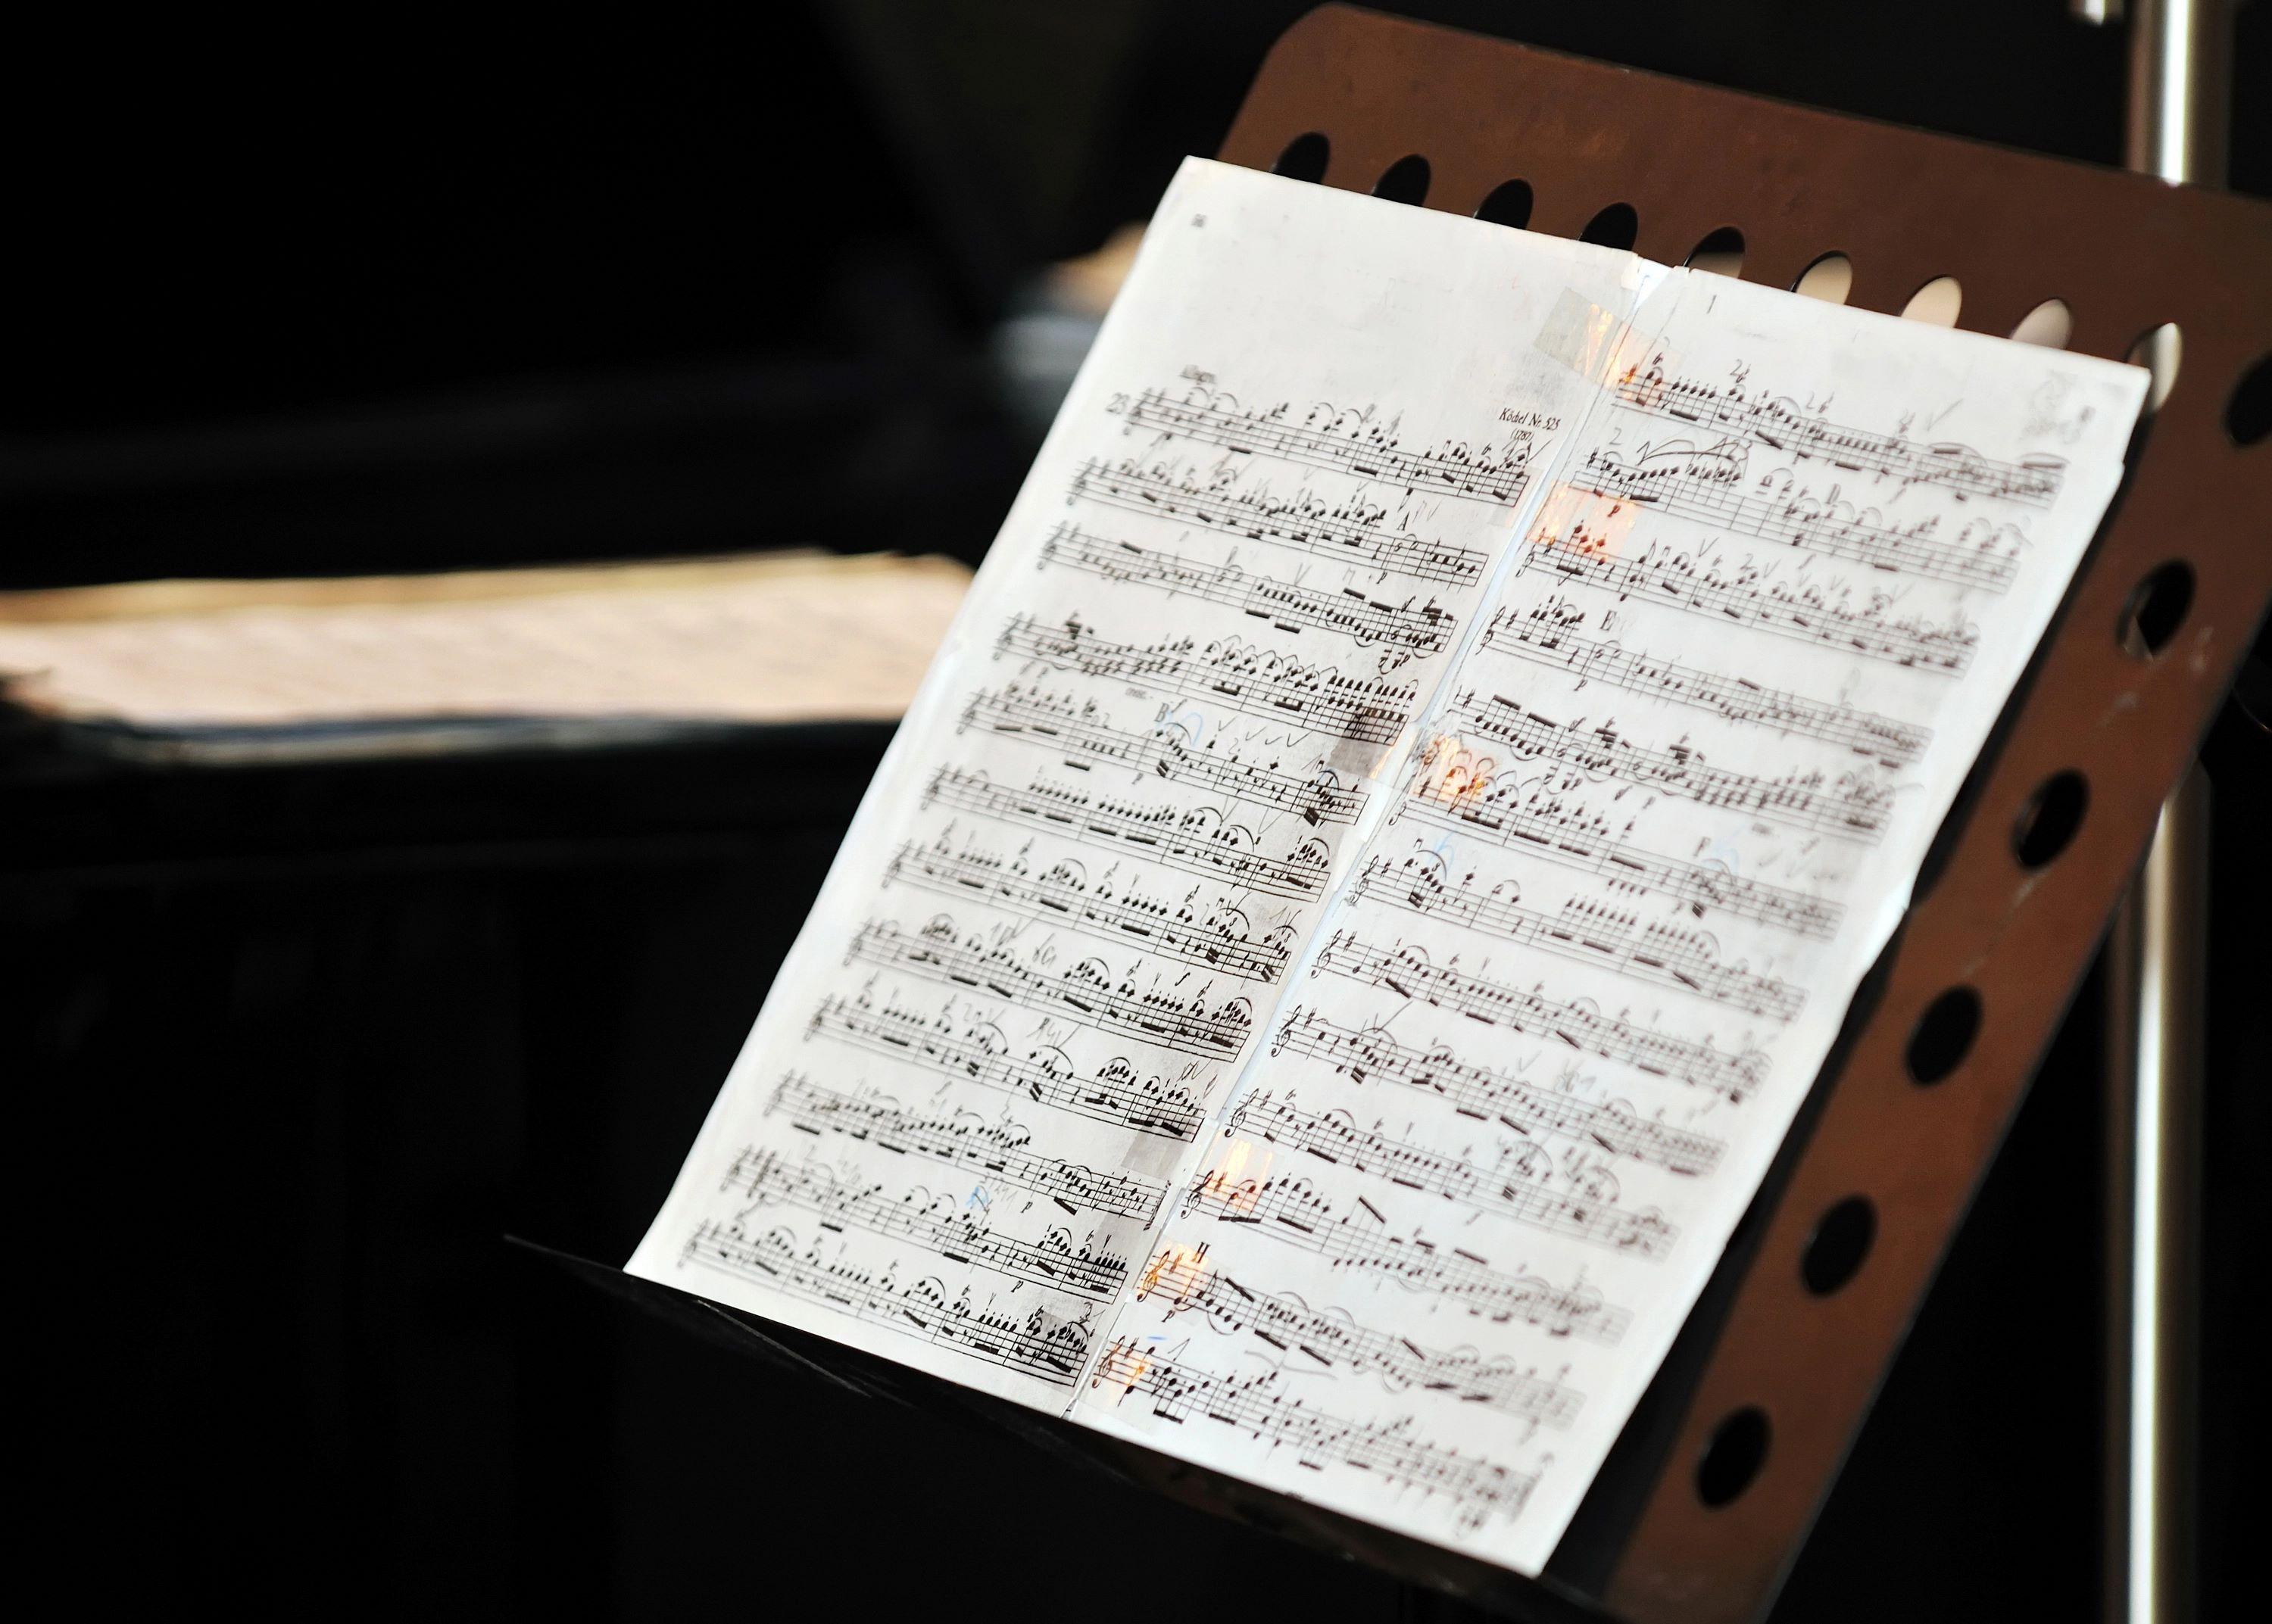 Концерт «"Времена года" Вивальди и шедевры классики» во Владимирском дворце с экскурсией со скидкой 30%